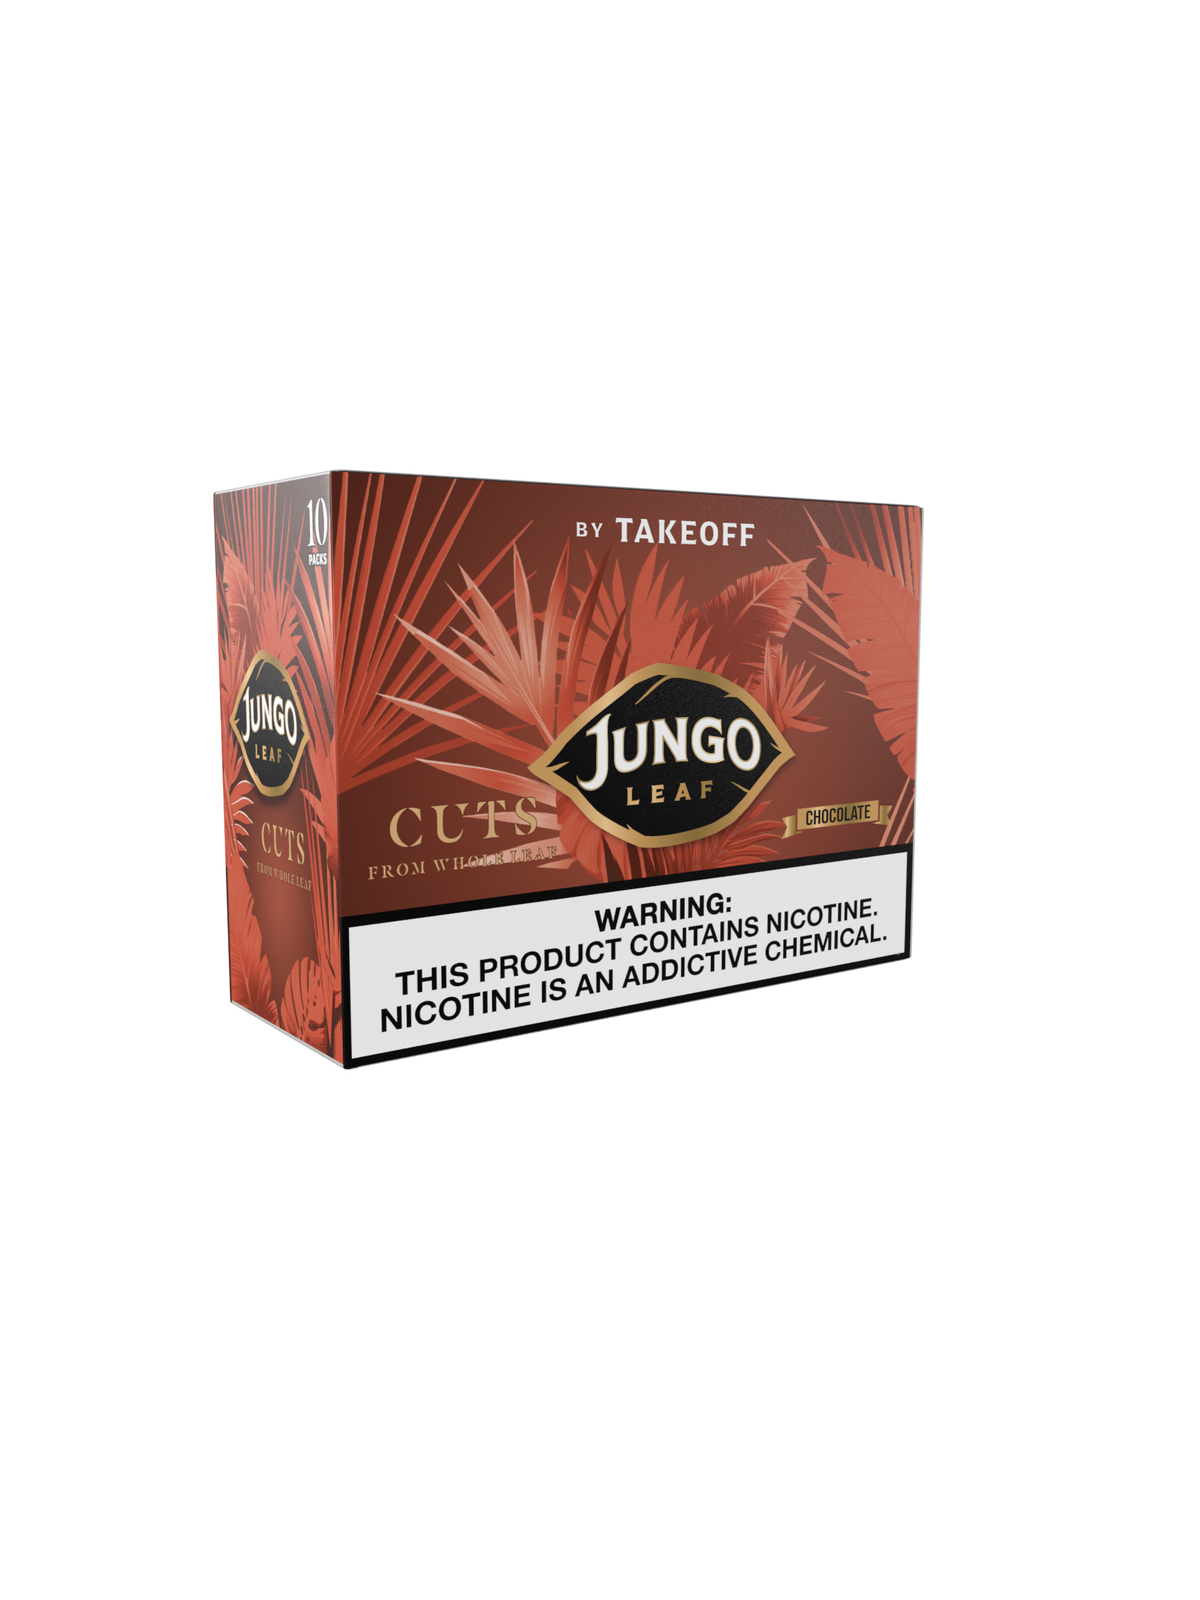 Jungo Leaf Cuts | Chocolate | 10ct Box